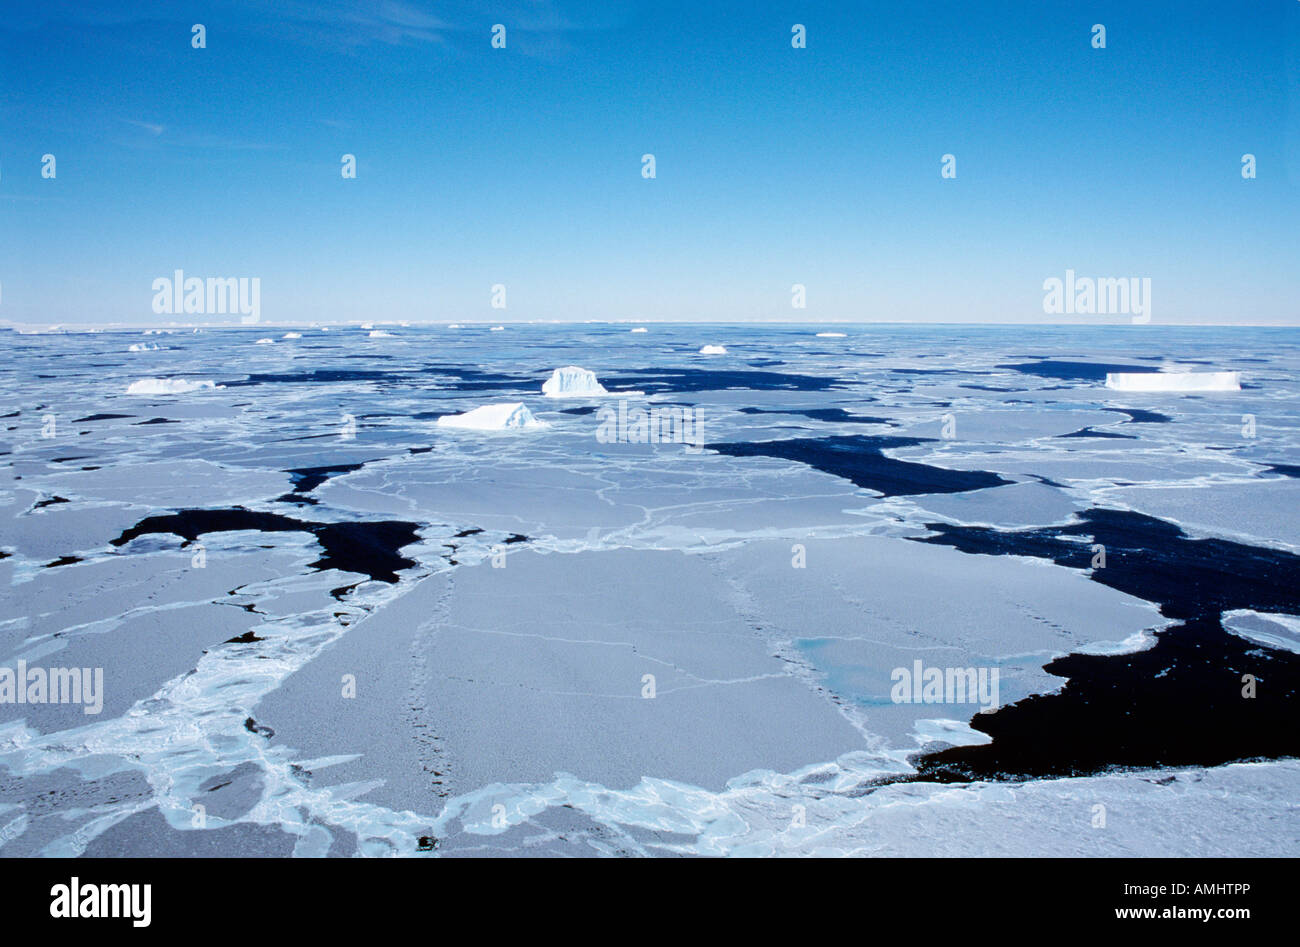 pack ice in the Weddell Sea Antarctica Antarktis Eis Eisfelder Eislandschaften Eisschollen Kaelte Landschaften Meer Meereis Natu Stock Photo